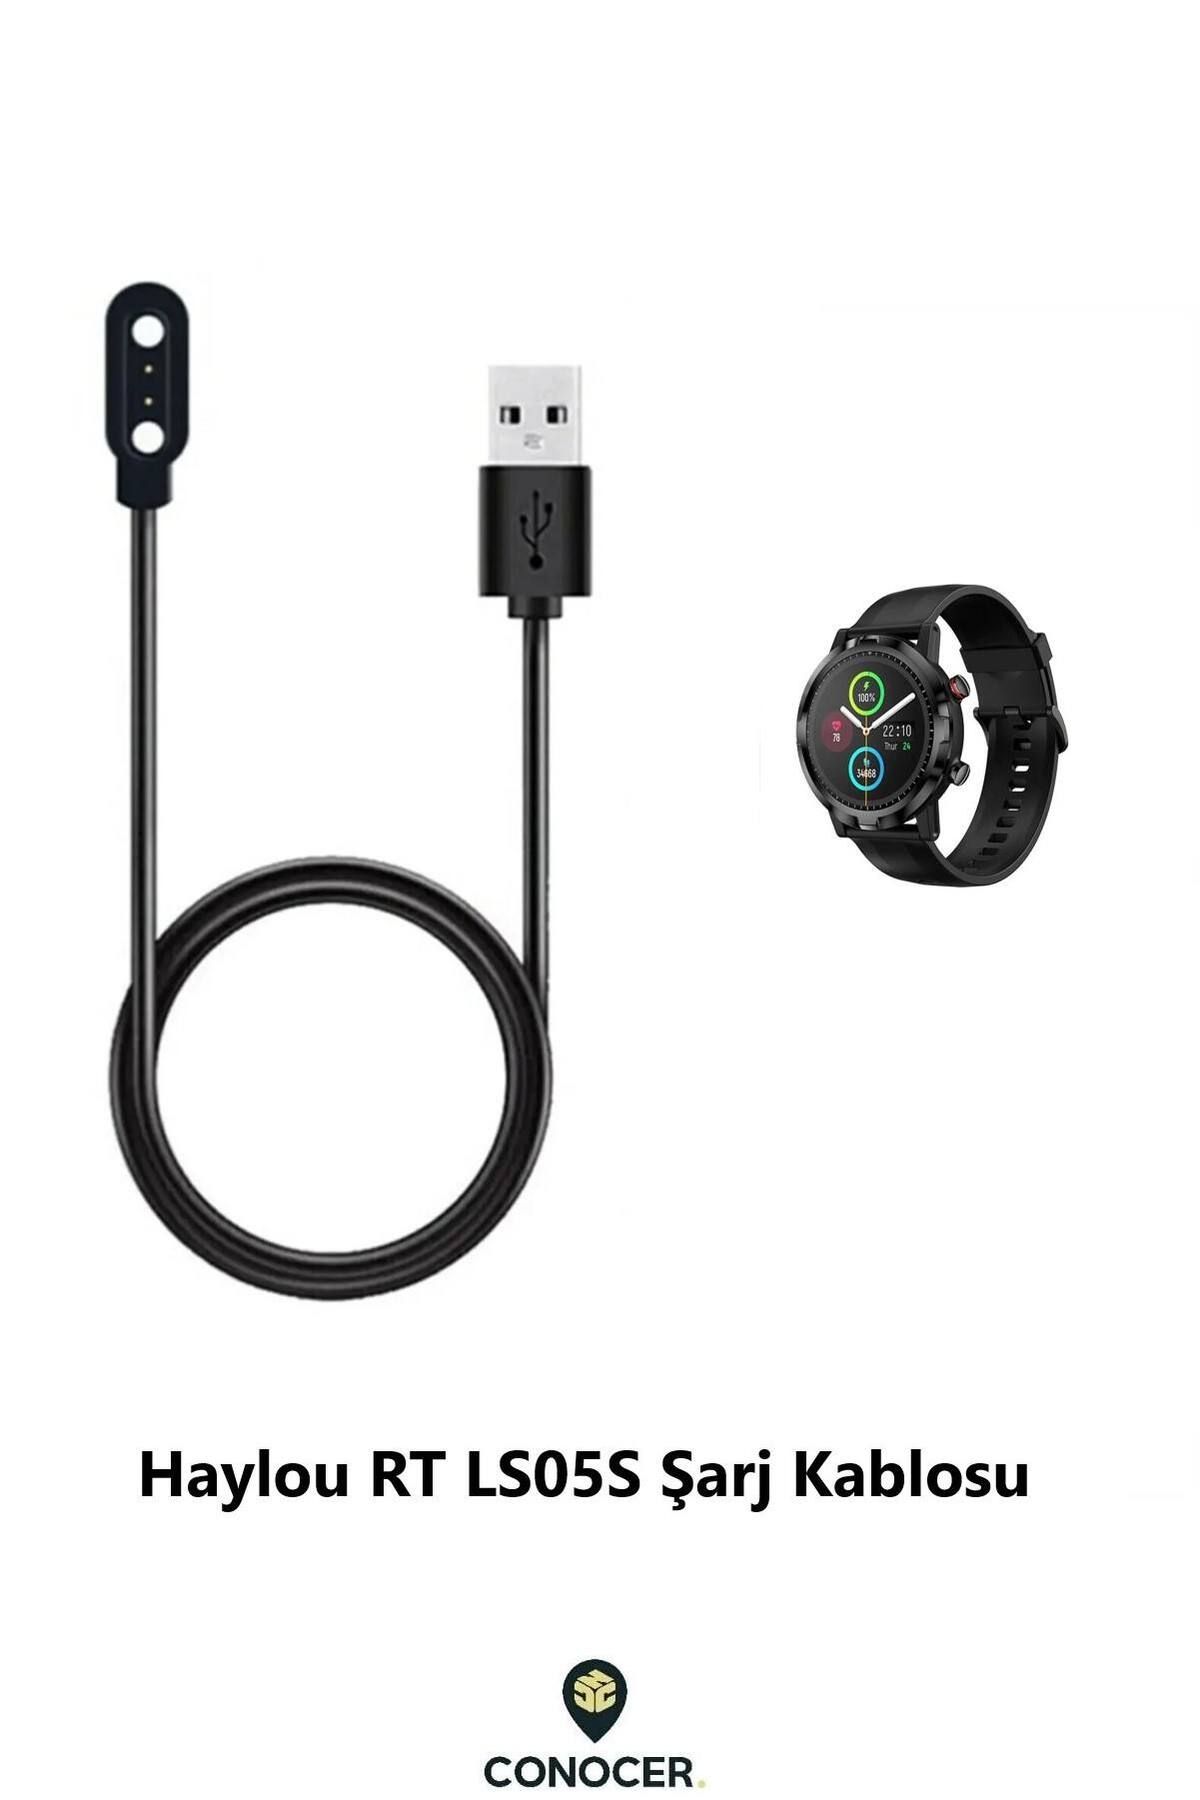 AQUA AKSESUAR Haylou RT LS05S Uyumlu Yüksek Kalite 60 cm Manyetik USB Şarj Kablosu